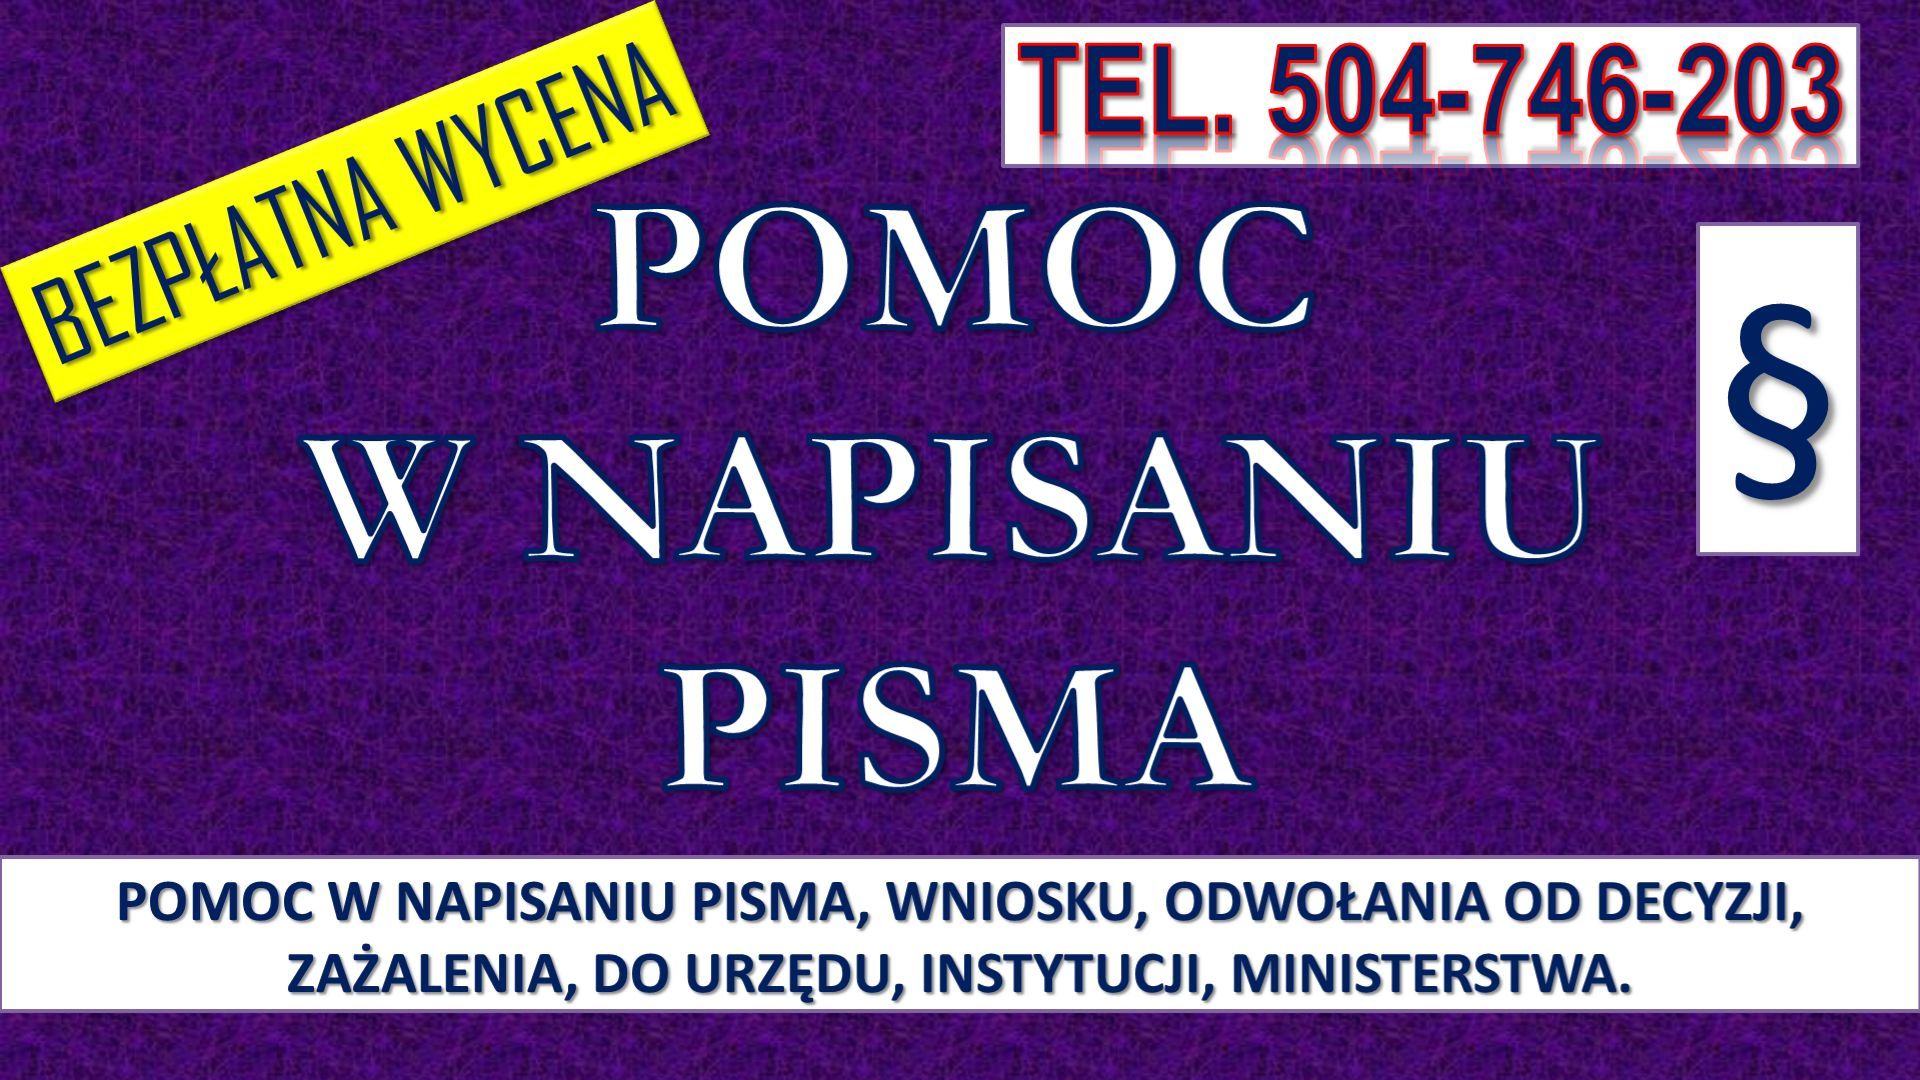 Napisanie pisma cena, tel. 504-746-203. Biuro pisania pism podań, odwołanie Wrocław - Zdjęcie 1